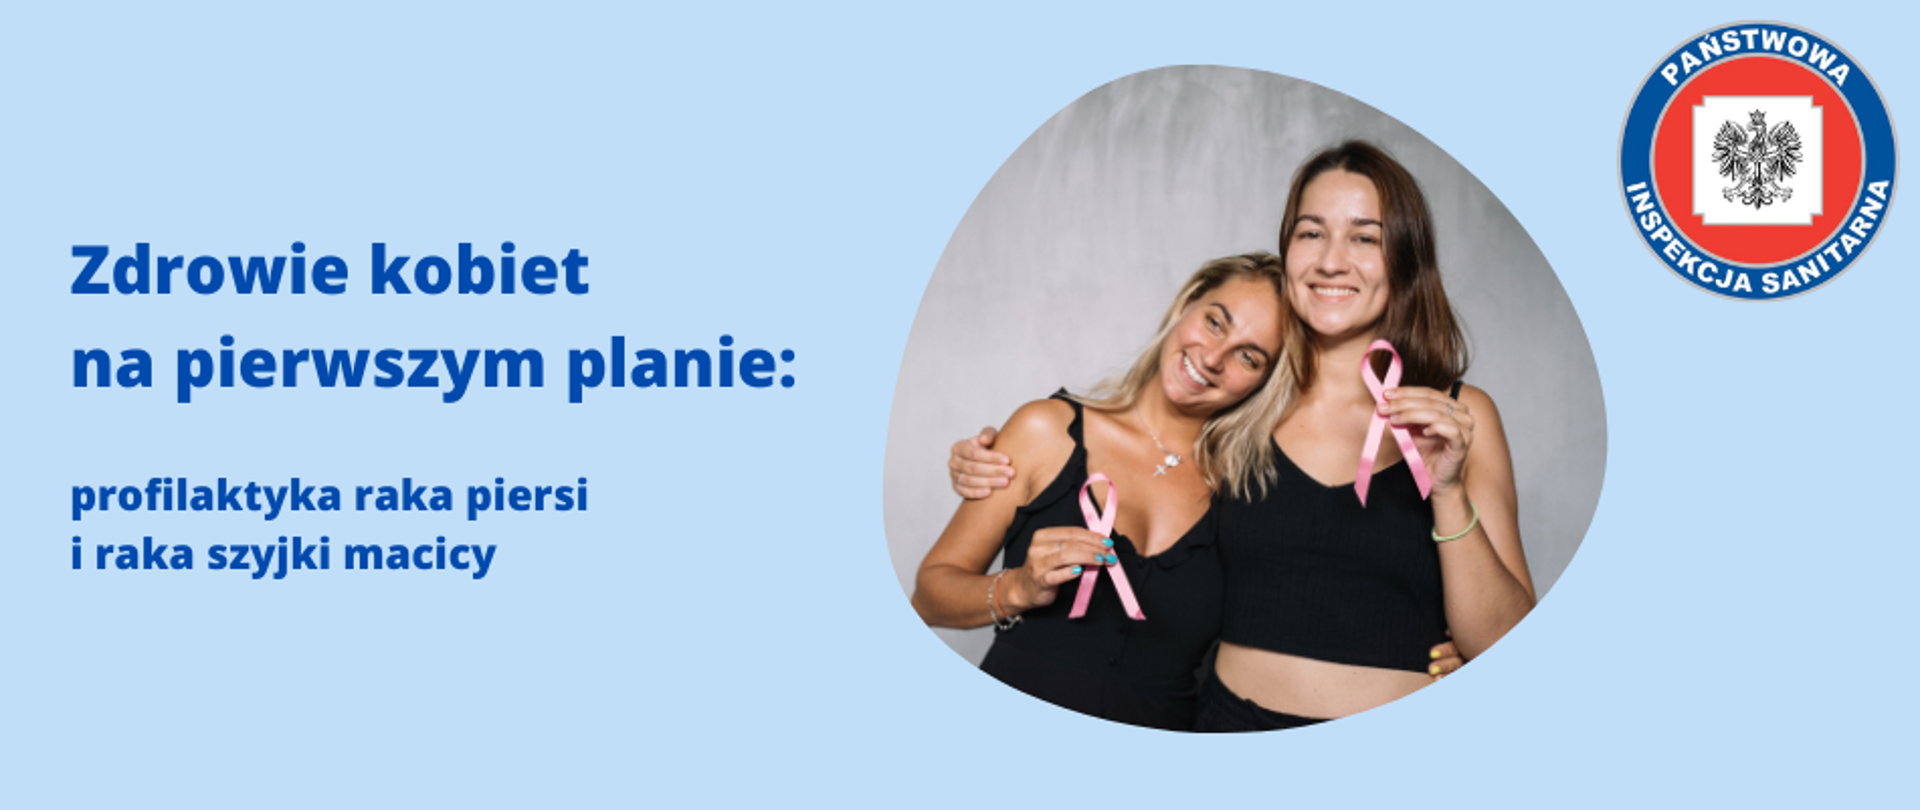 Zdjęcie przedstawia tytuł: "Zdrowie kobiet na pierwszym planie: profilaktyka raka piersi i szyjki macicy" oraz zdjęcie dwóch młodych kobiet trzymających różowe wstążki - znak jedności z osobami chorującymi na nowotwór piersi. W prawym górnym rogu logo Państwowej Inspekcji Sanitarnej.